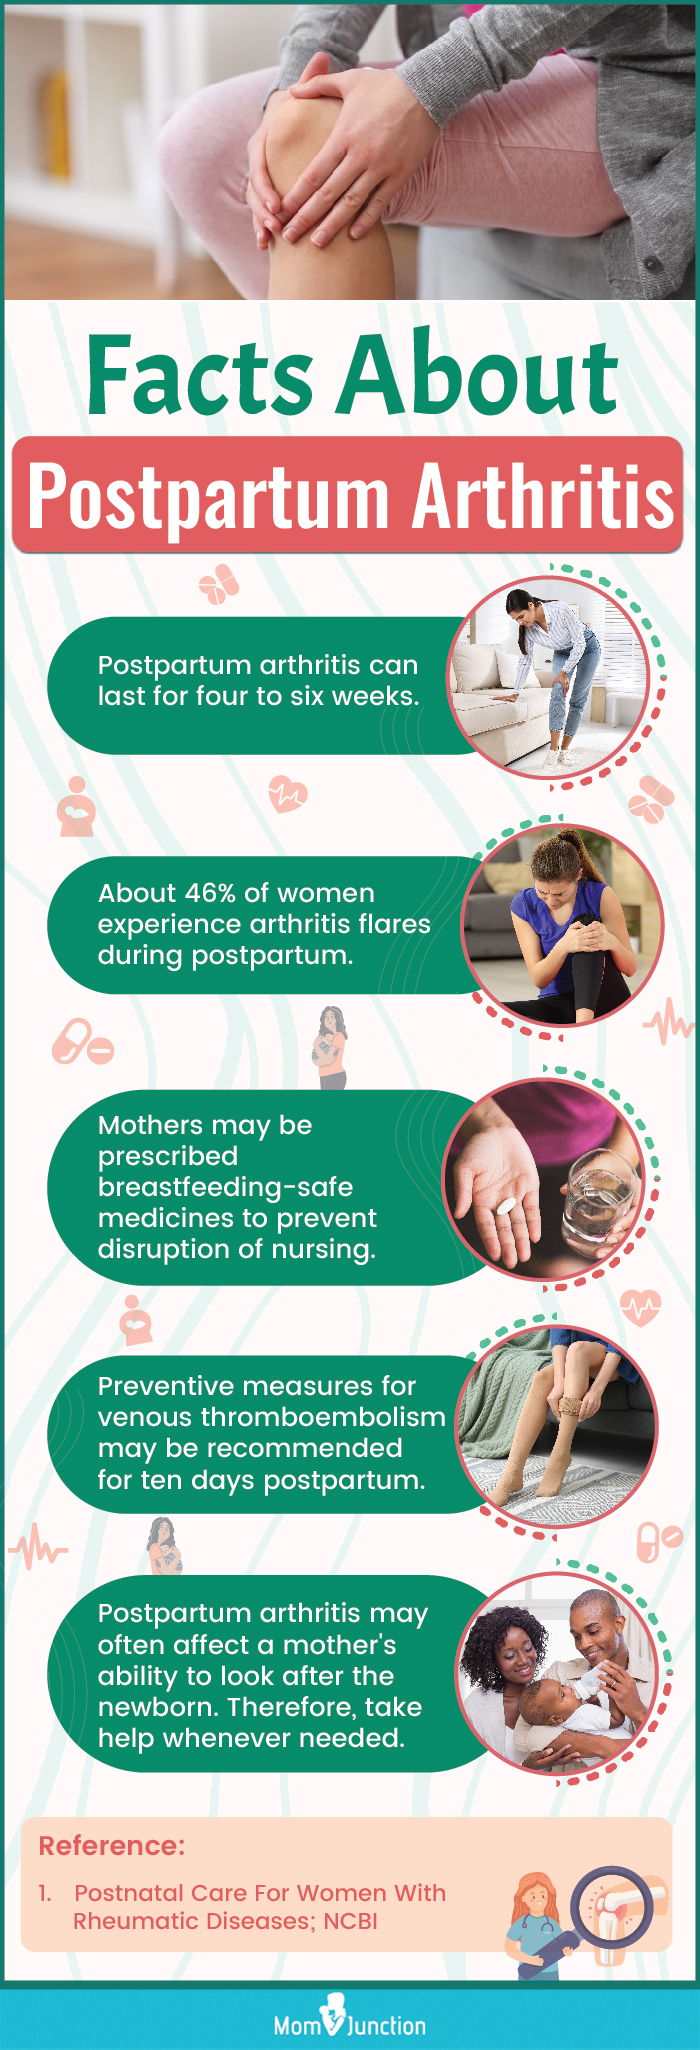 postpartum arthritis (infographic)